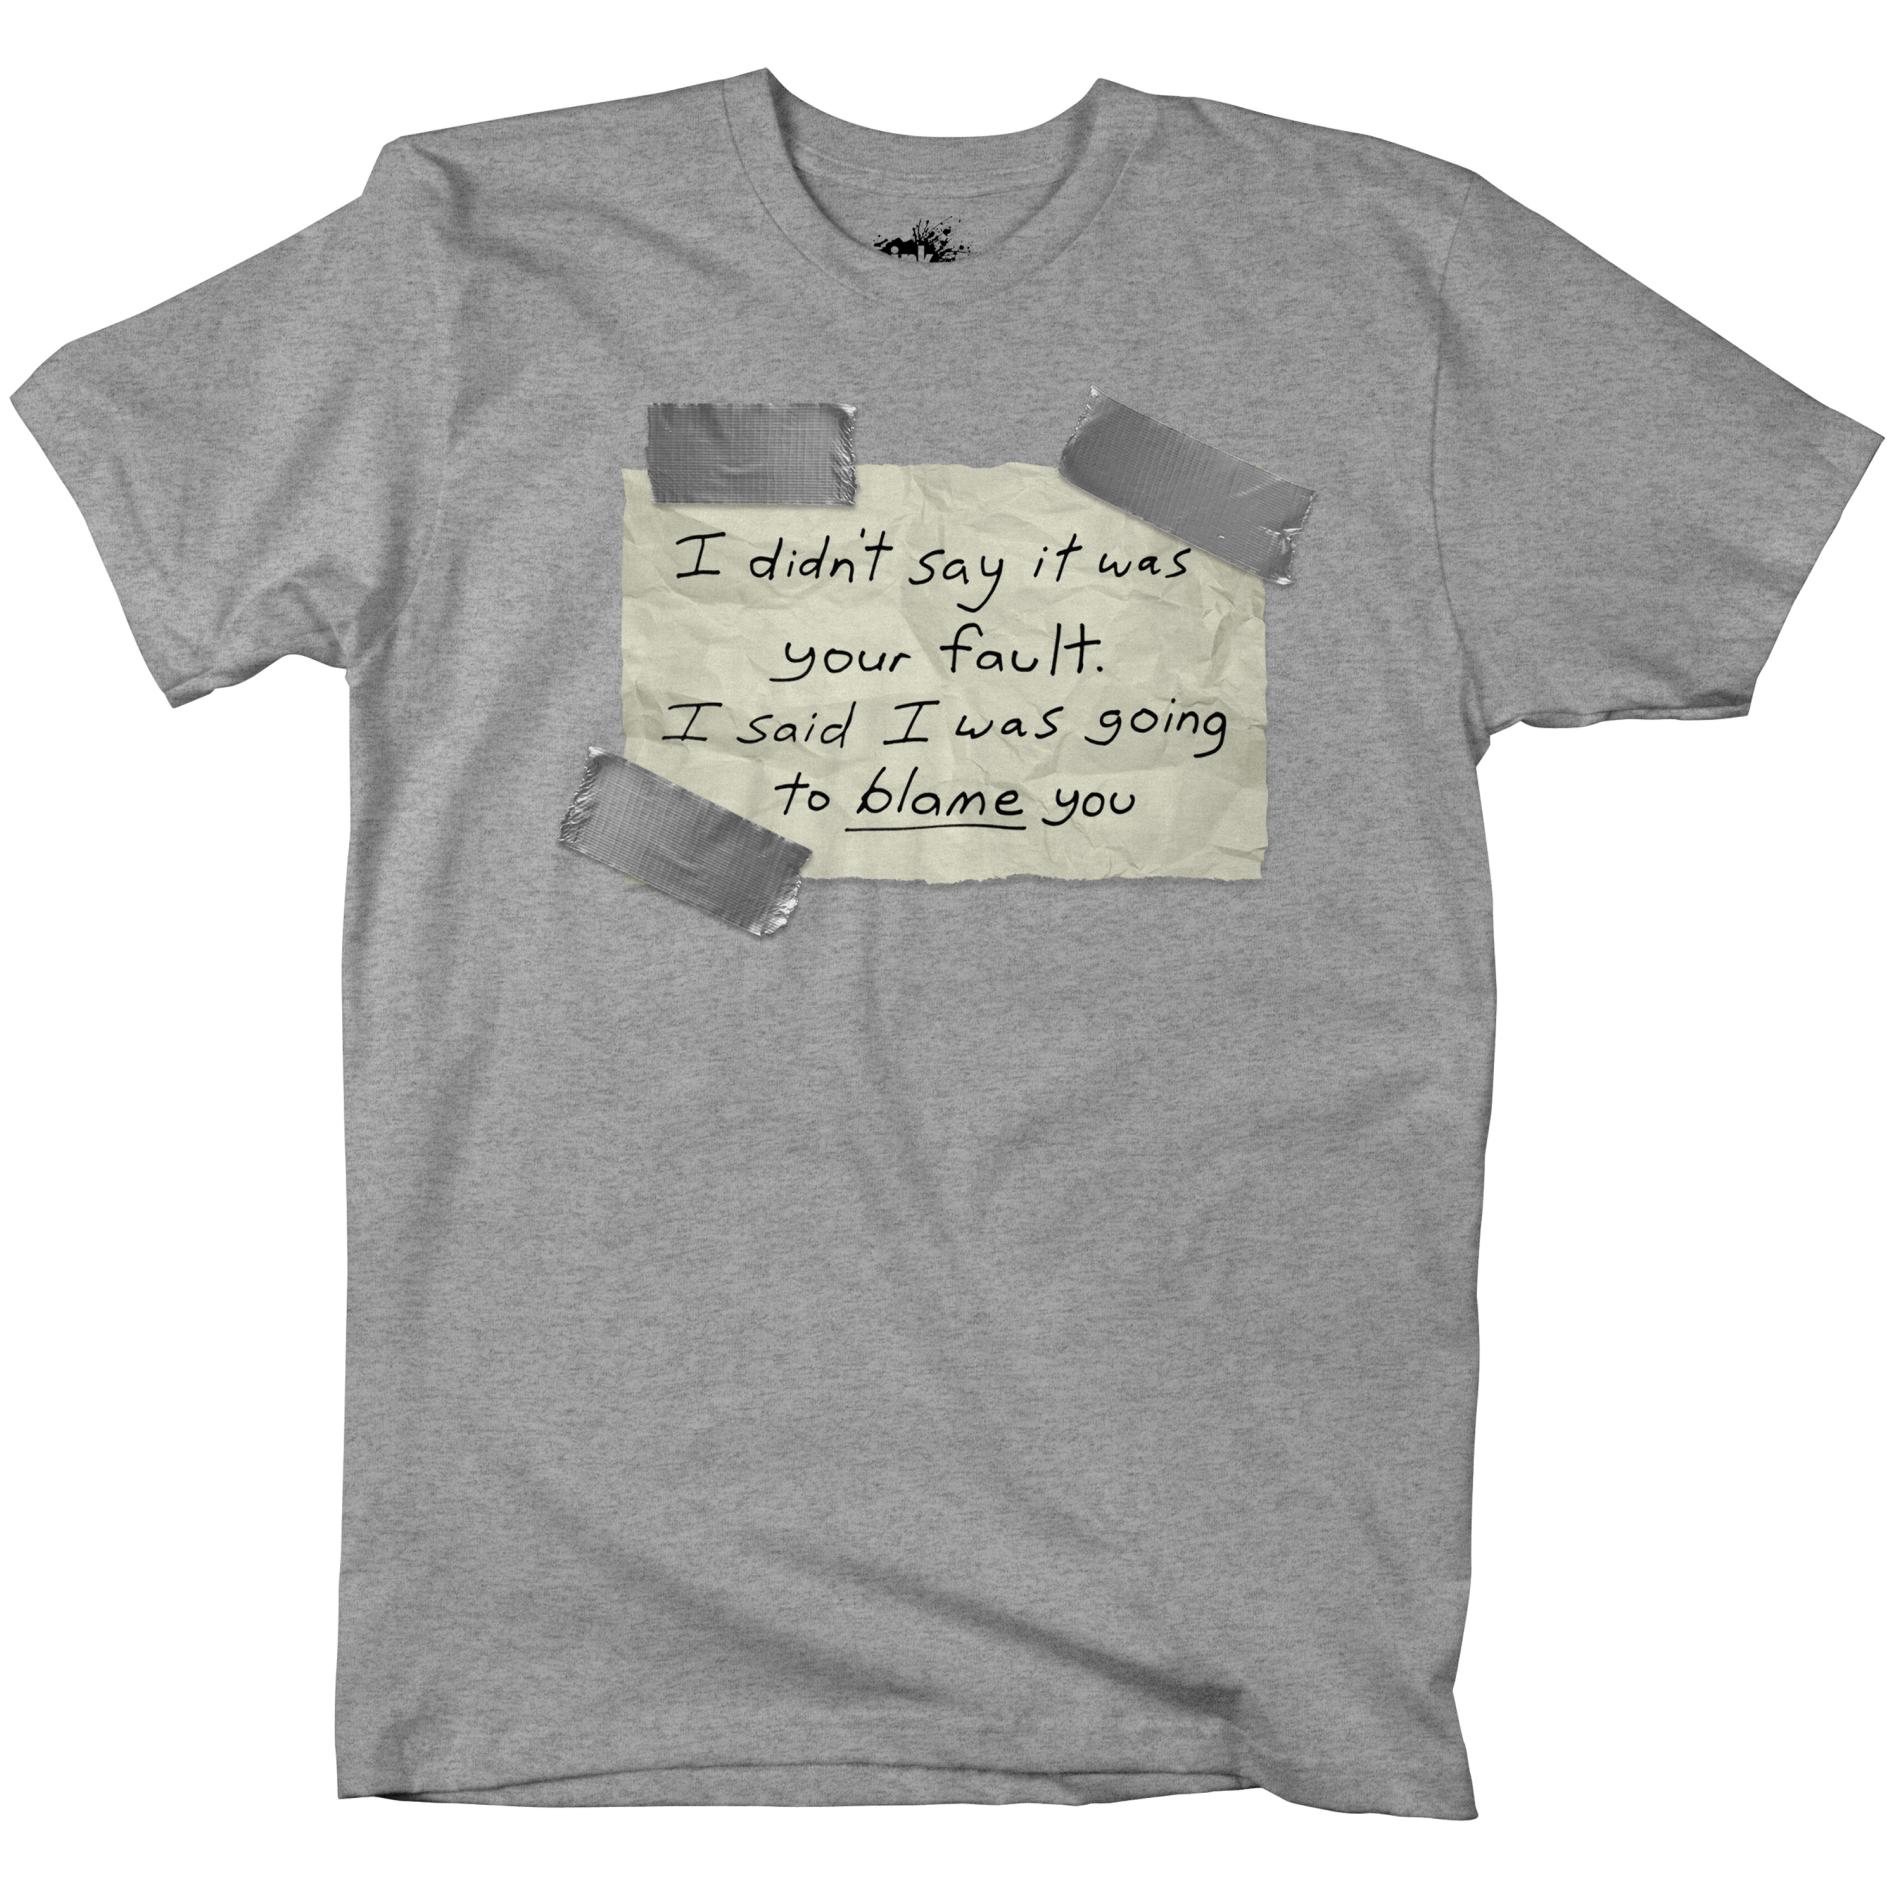 Bravado Boy's Graphic T-Shirt - Your Fault